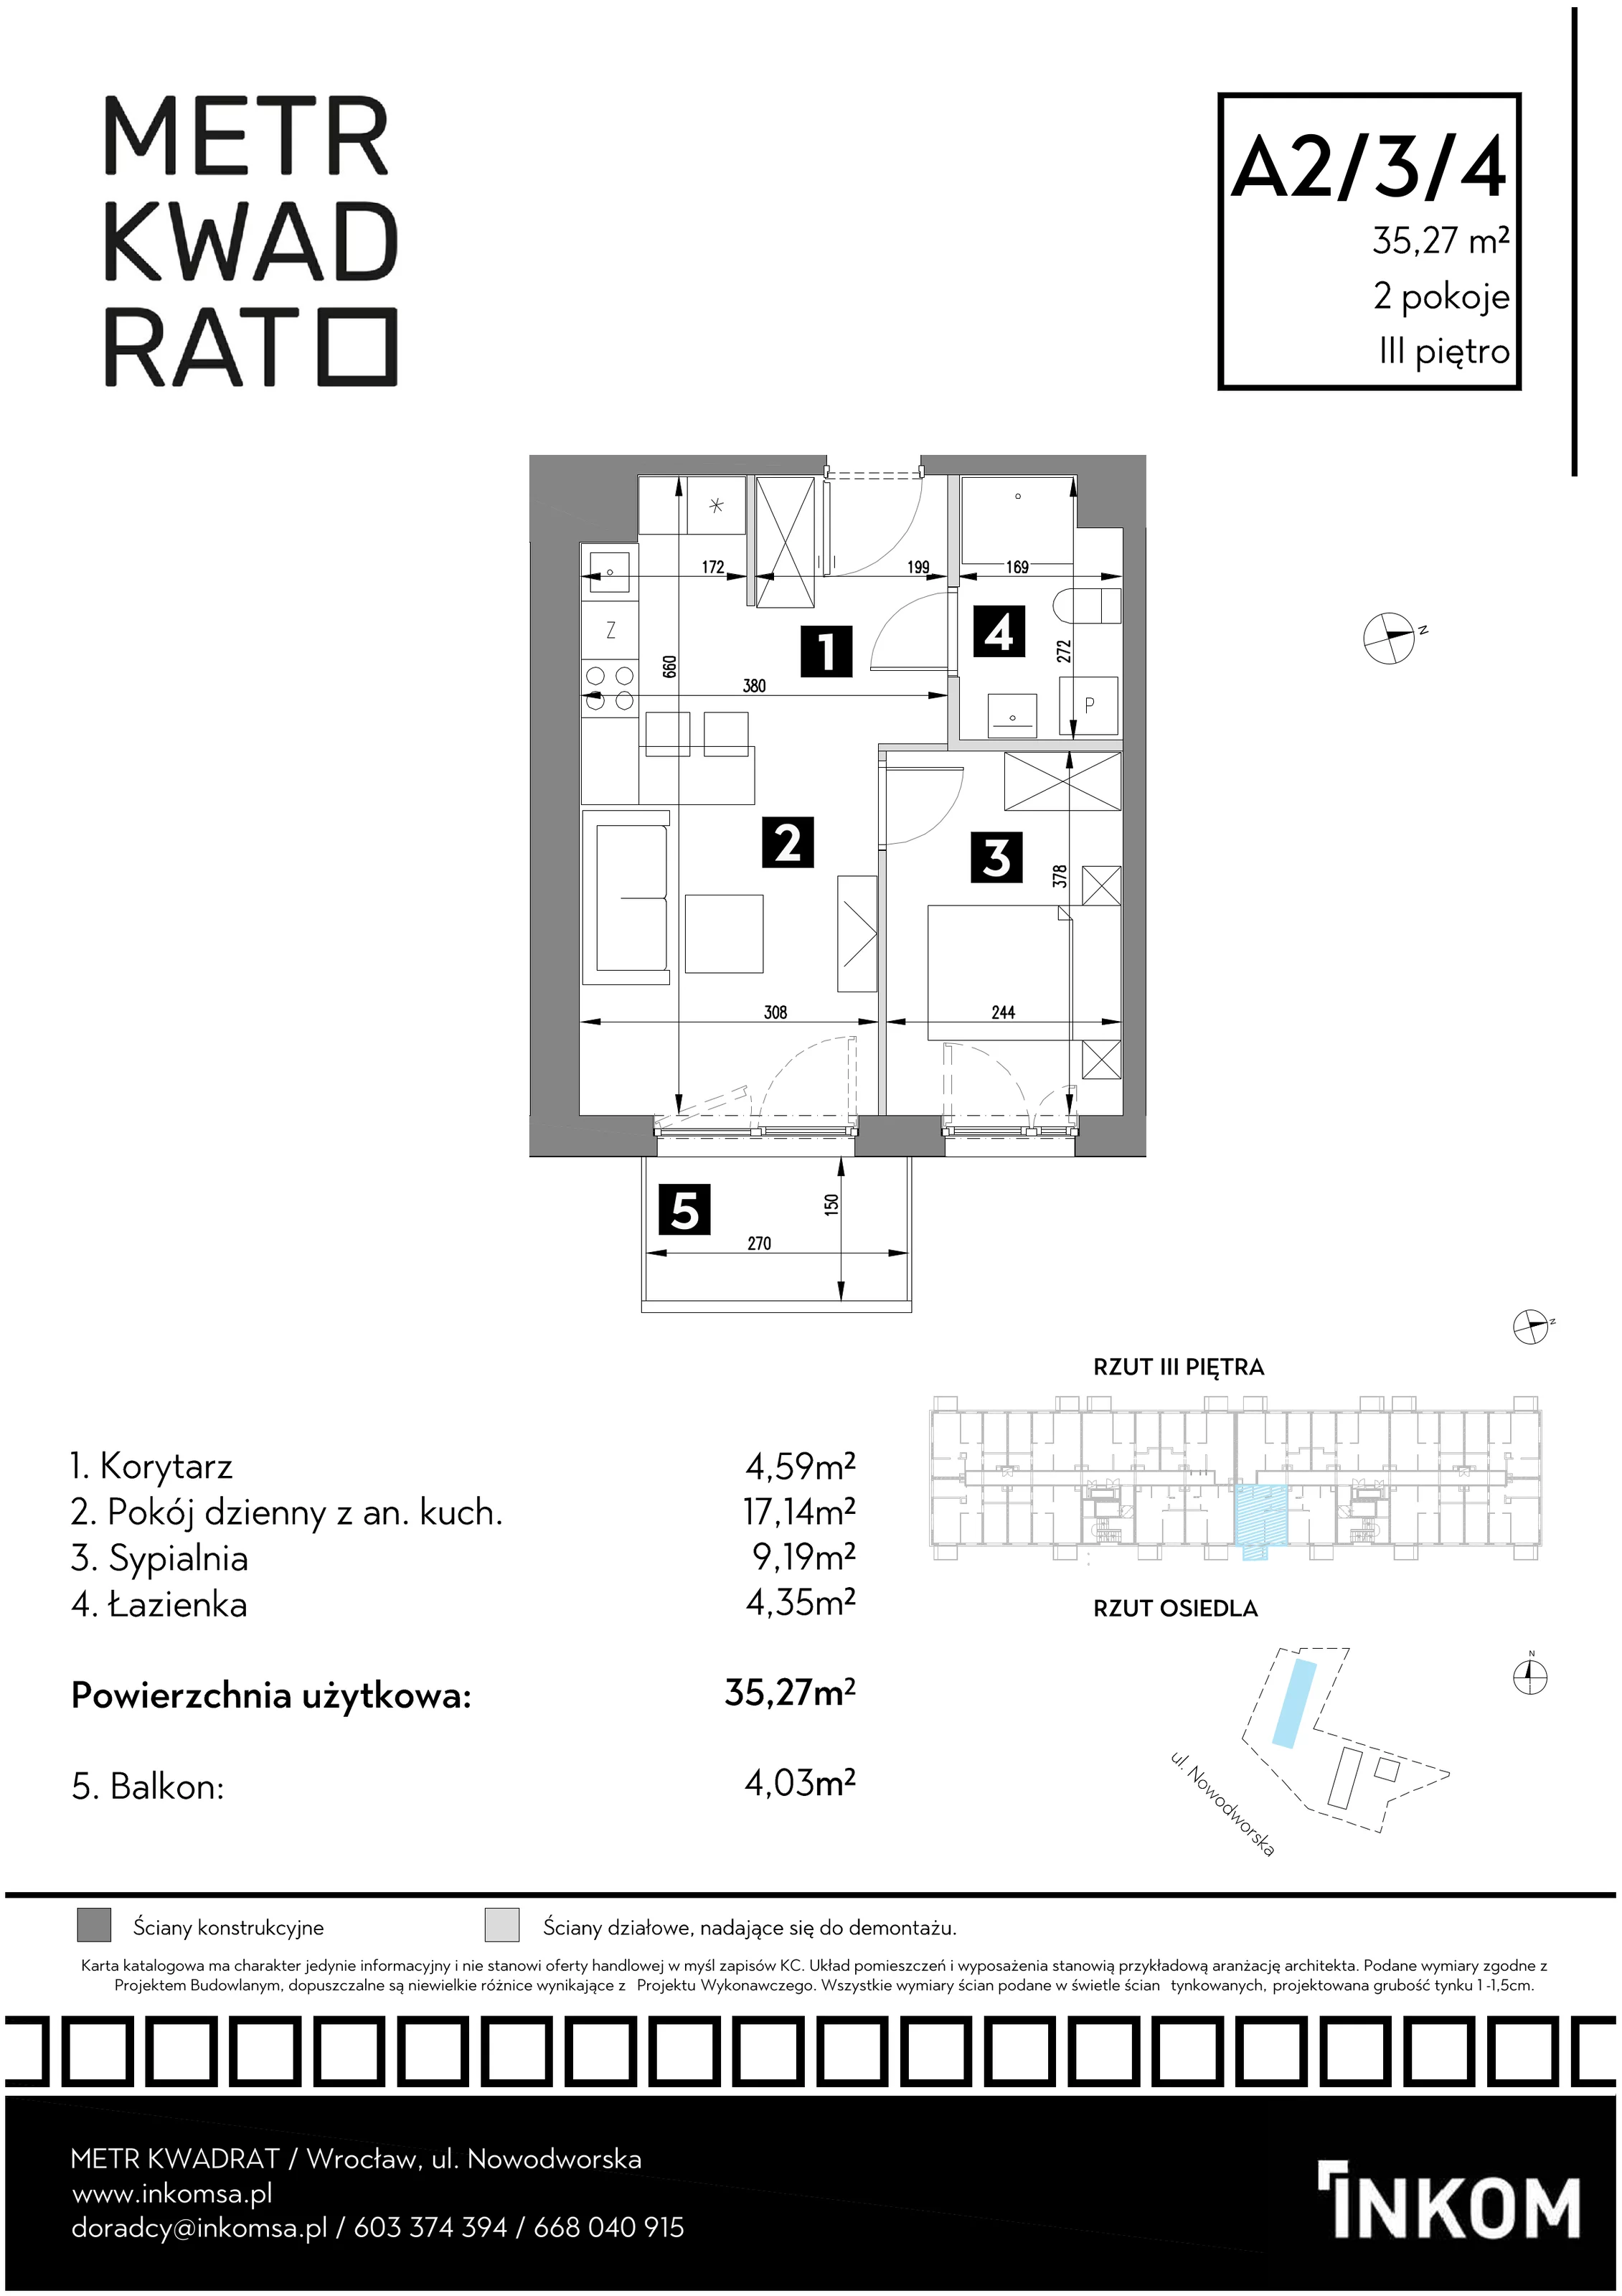 Mieszkanie 35,27 m², piętro 3, oferta nr A2/3/4, Metr Kwadrat, Wrocław, Nowy Dwór, ul. Nowodworska 17B